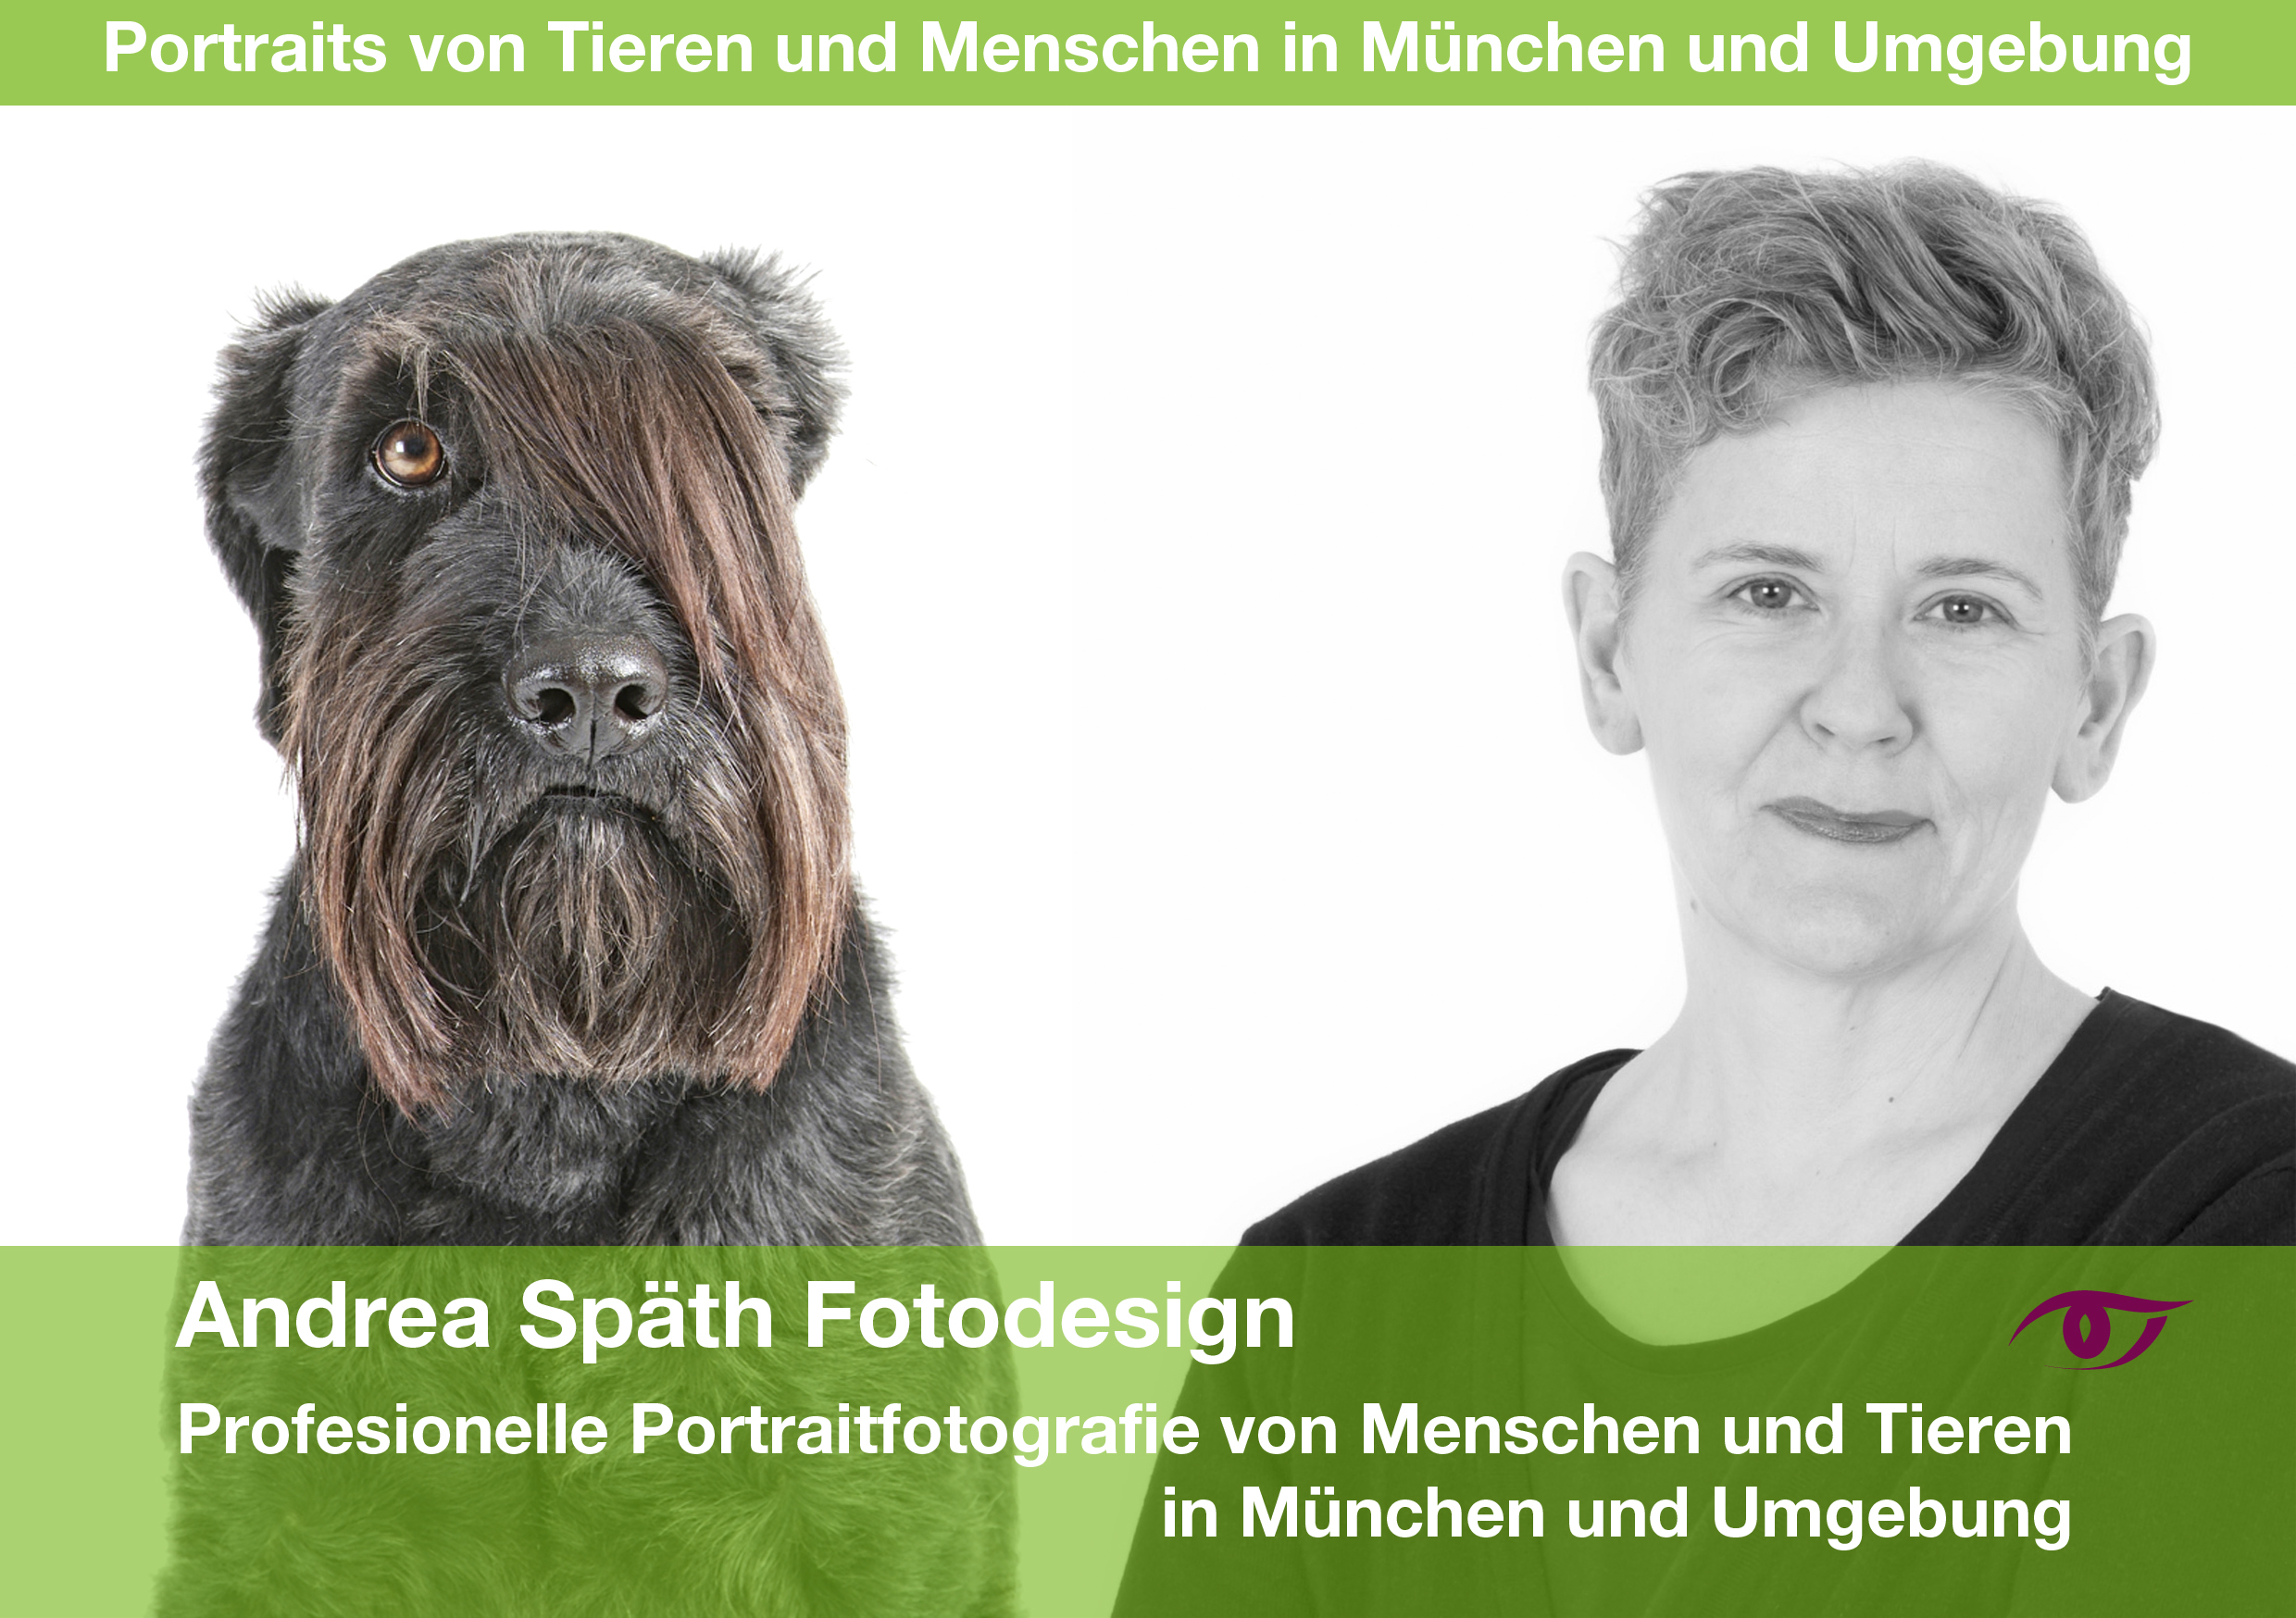 Andrea Späth und ein Hundeportrait der Fotografin.